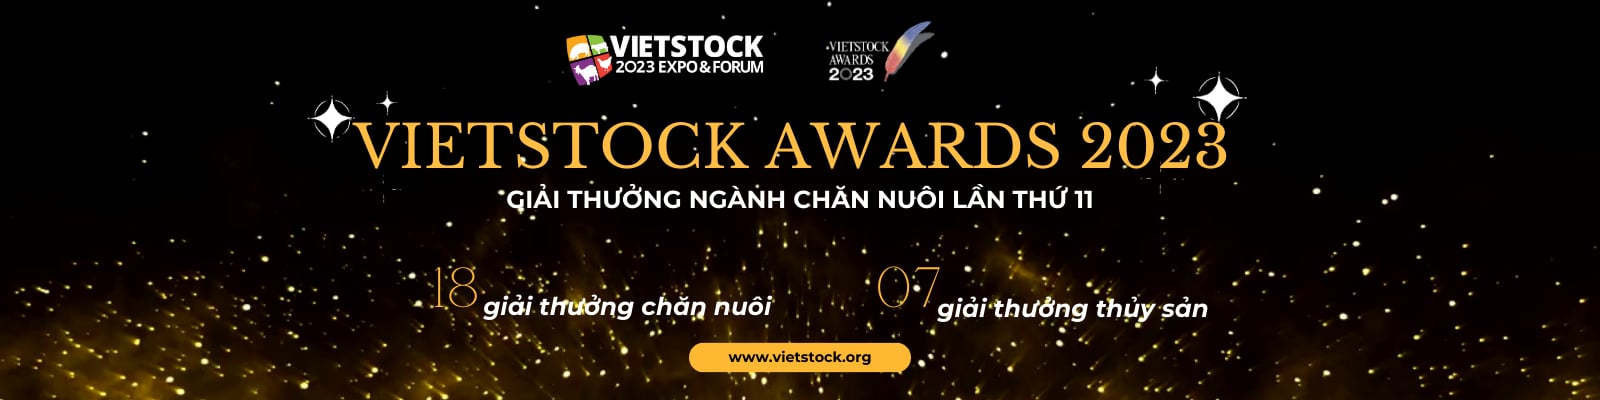 Vietstock Awards 2023 có 18 Giải thưởng lĩnh vực chăn nuôi bao gồm 5 nhóm.